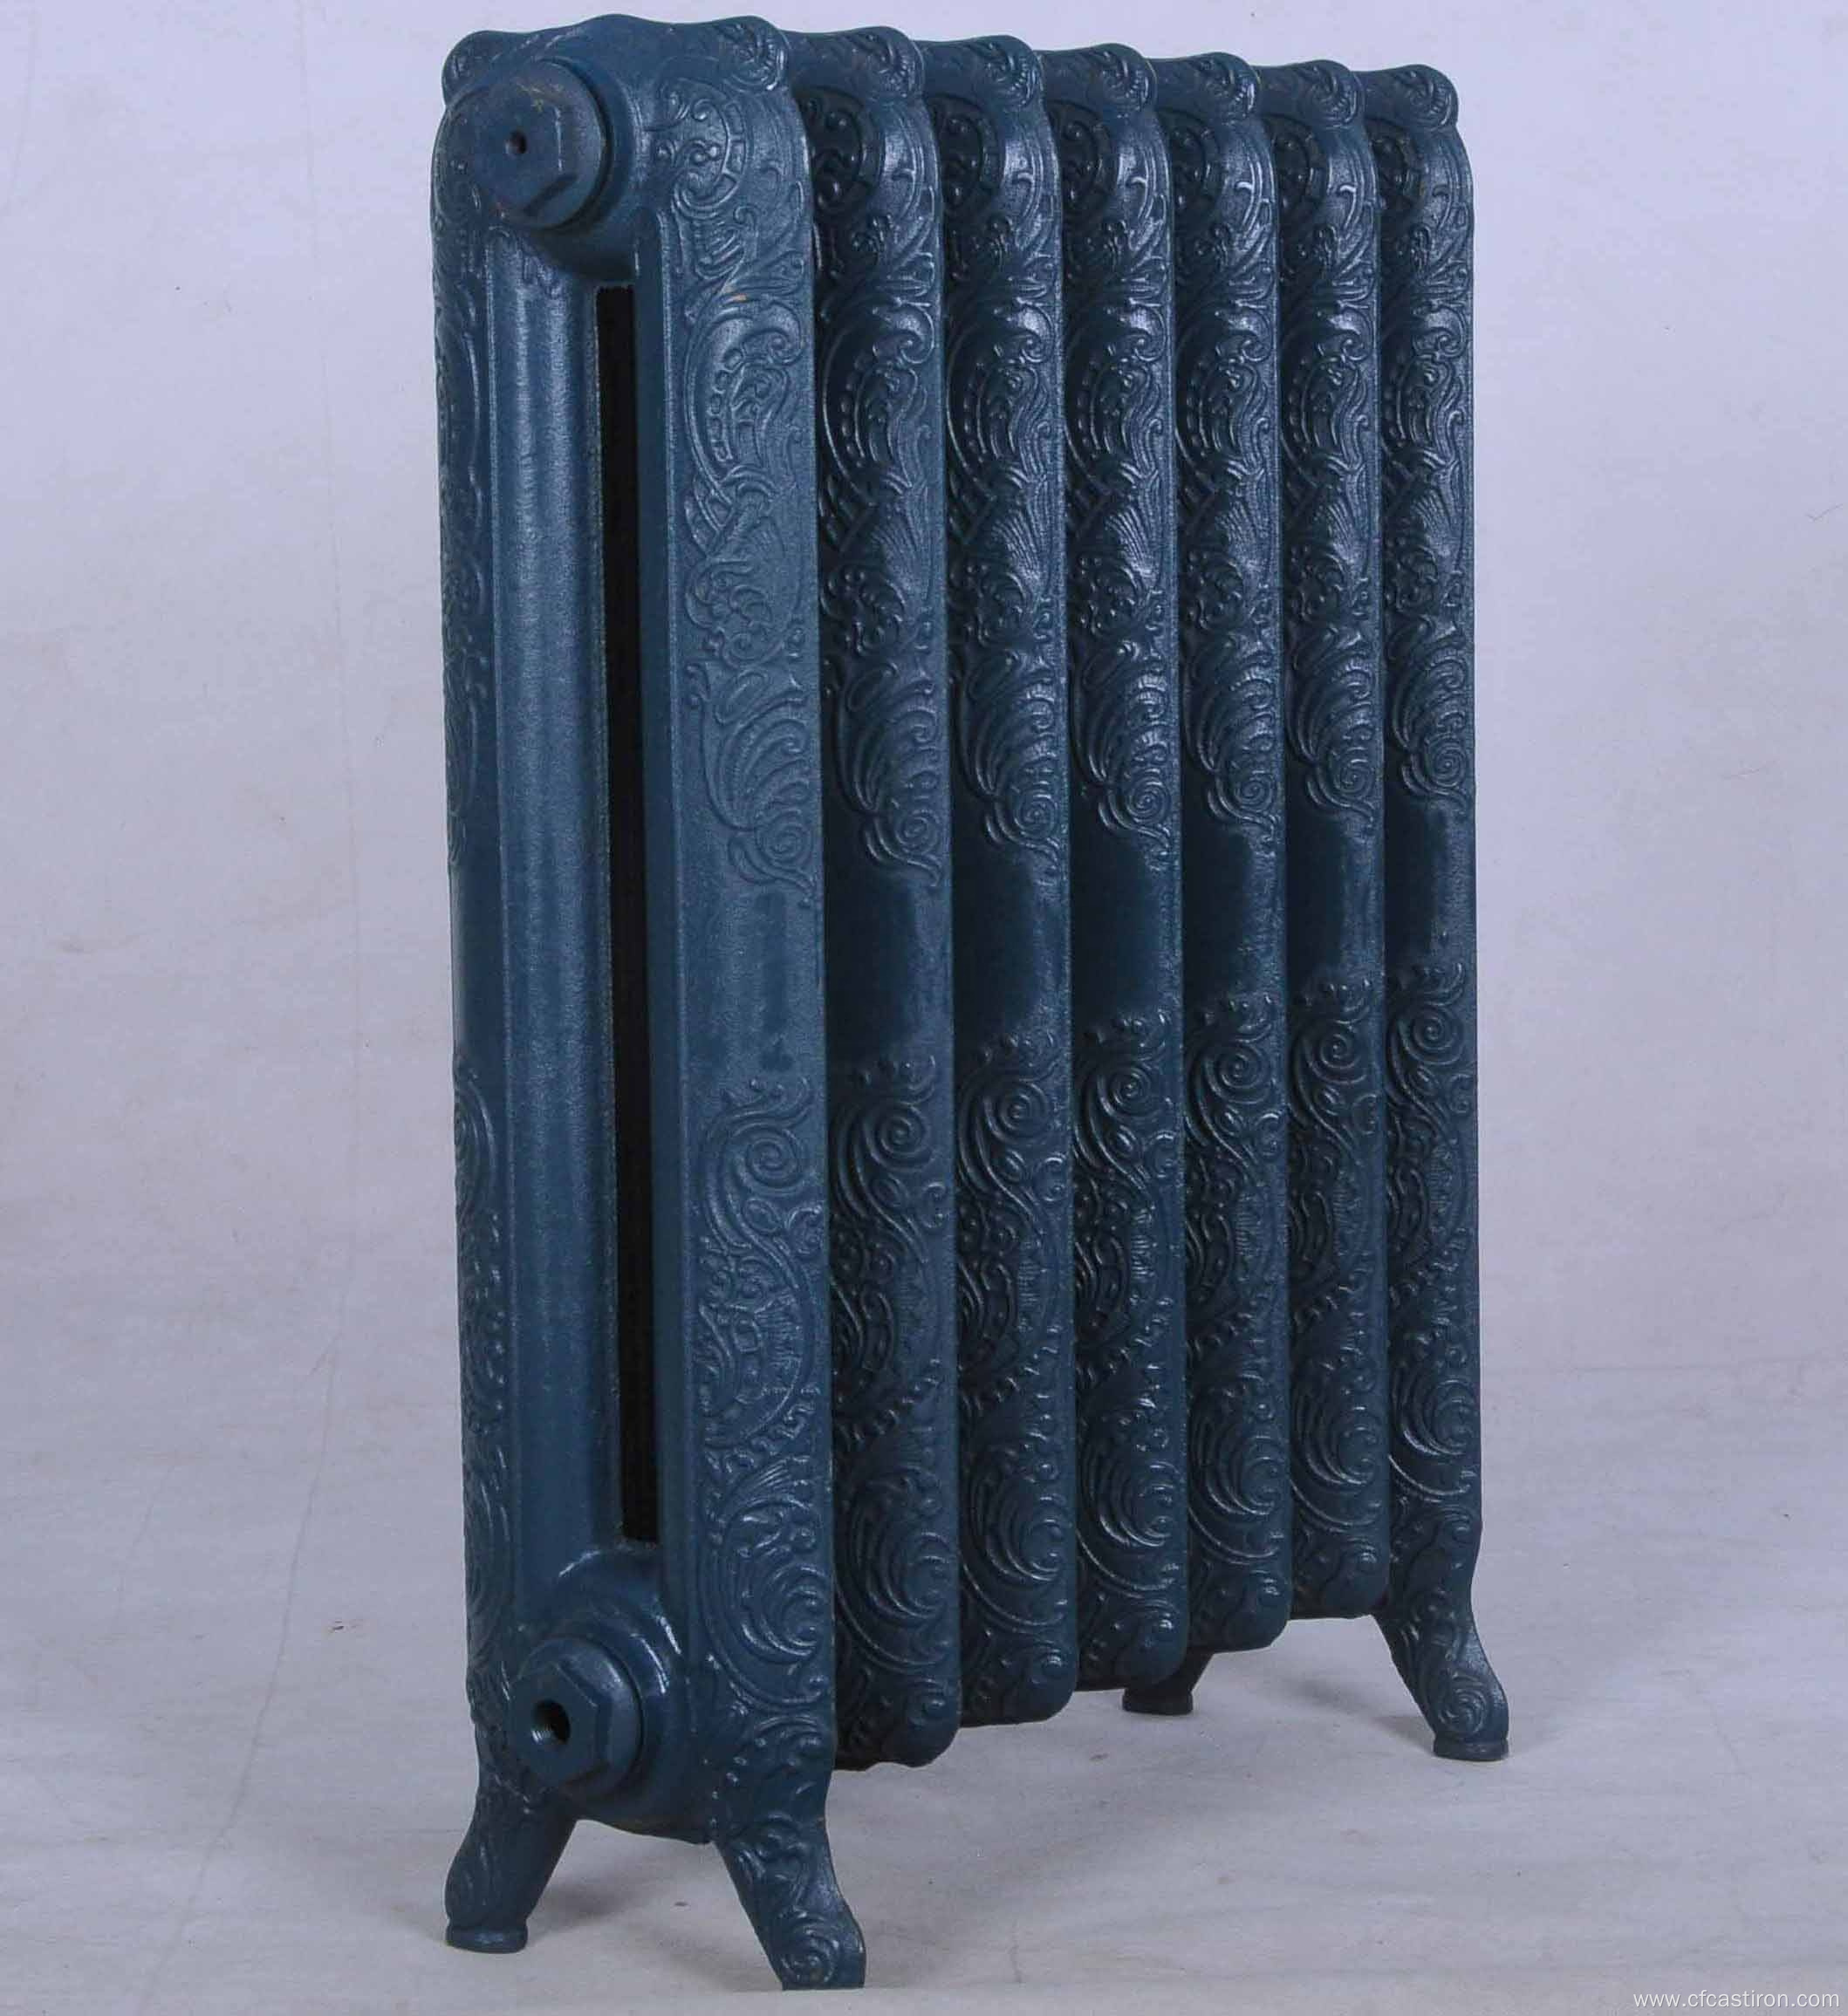 Queen cast iron radiators 760 series